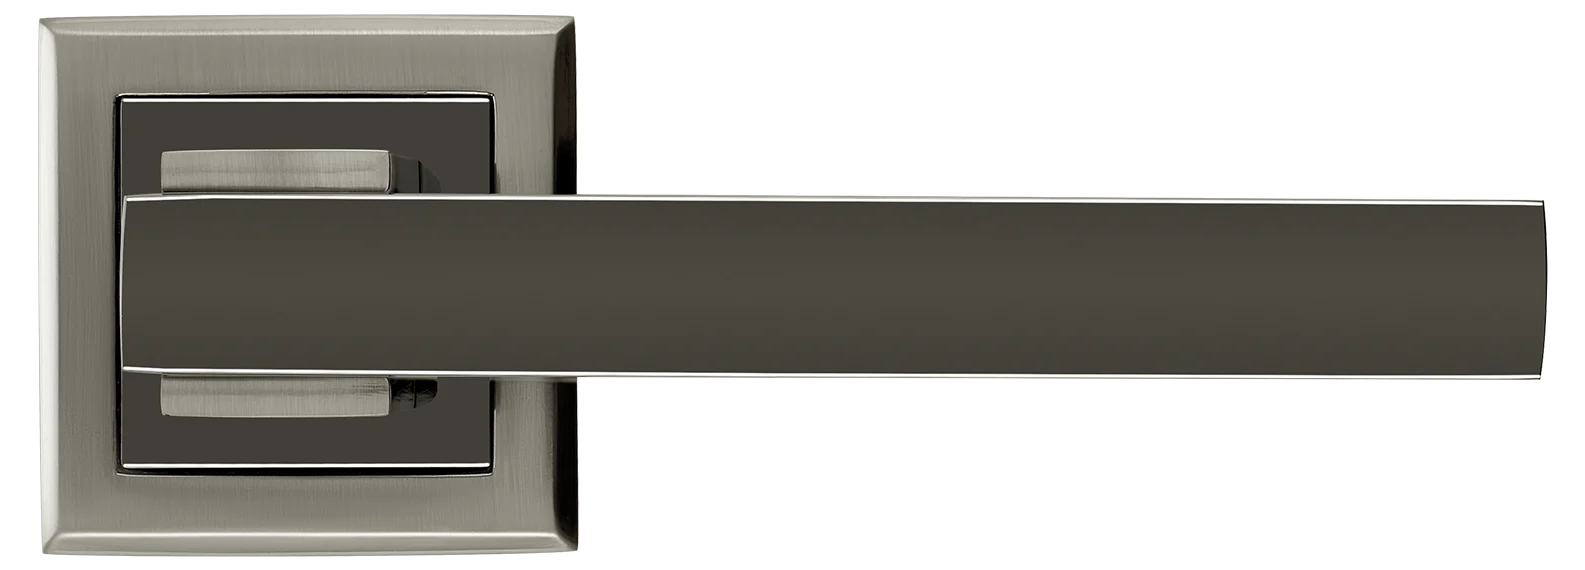 PIQUADRO, ручка дверная MH-37 SN/BN-S, на квадратной накладке, цвет - бел. никель/черн. никель фото купить в Калининграде